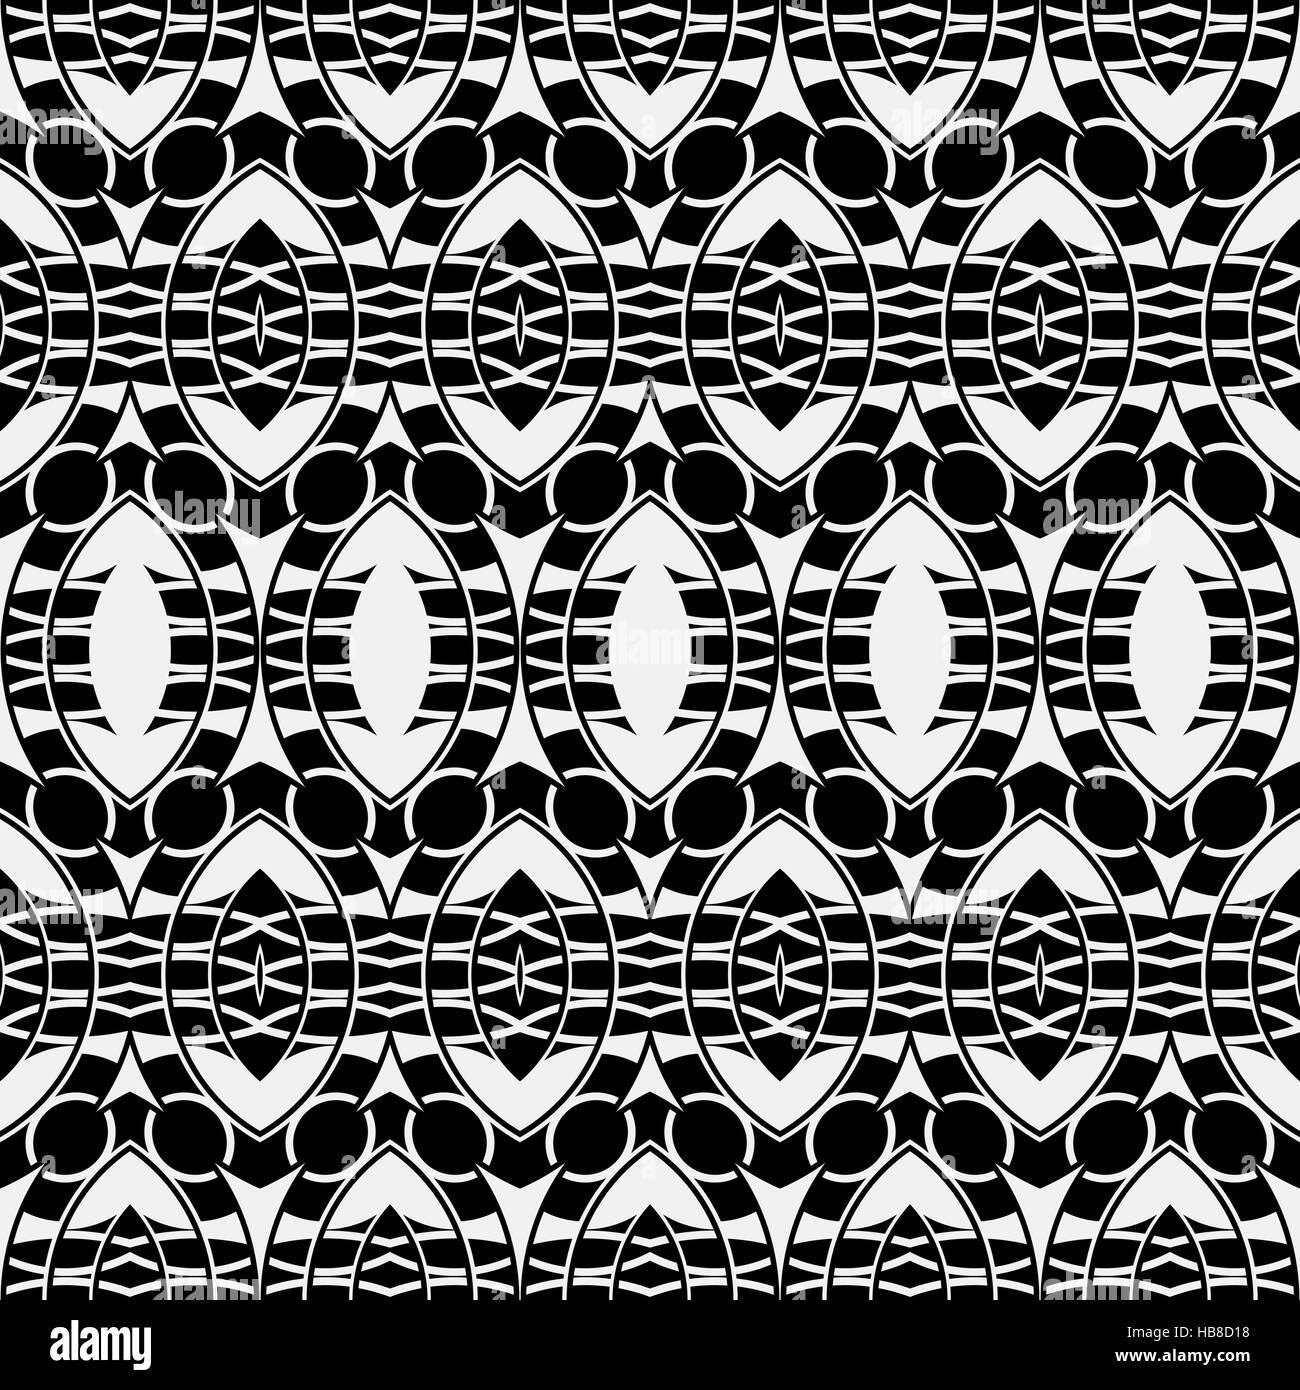 fabric like seamless pattern Stock Photo